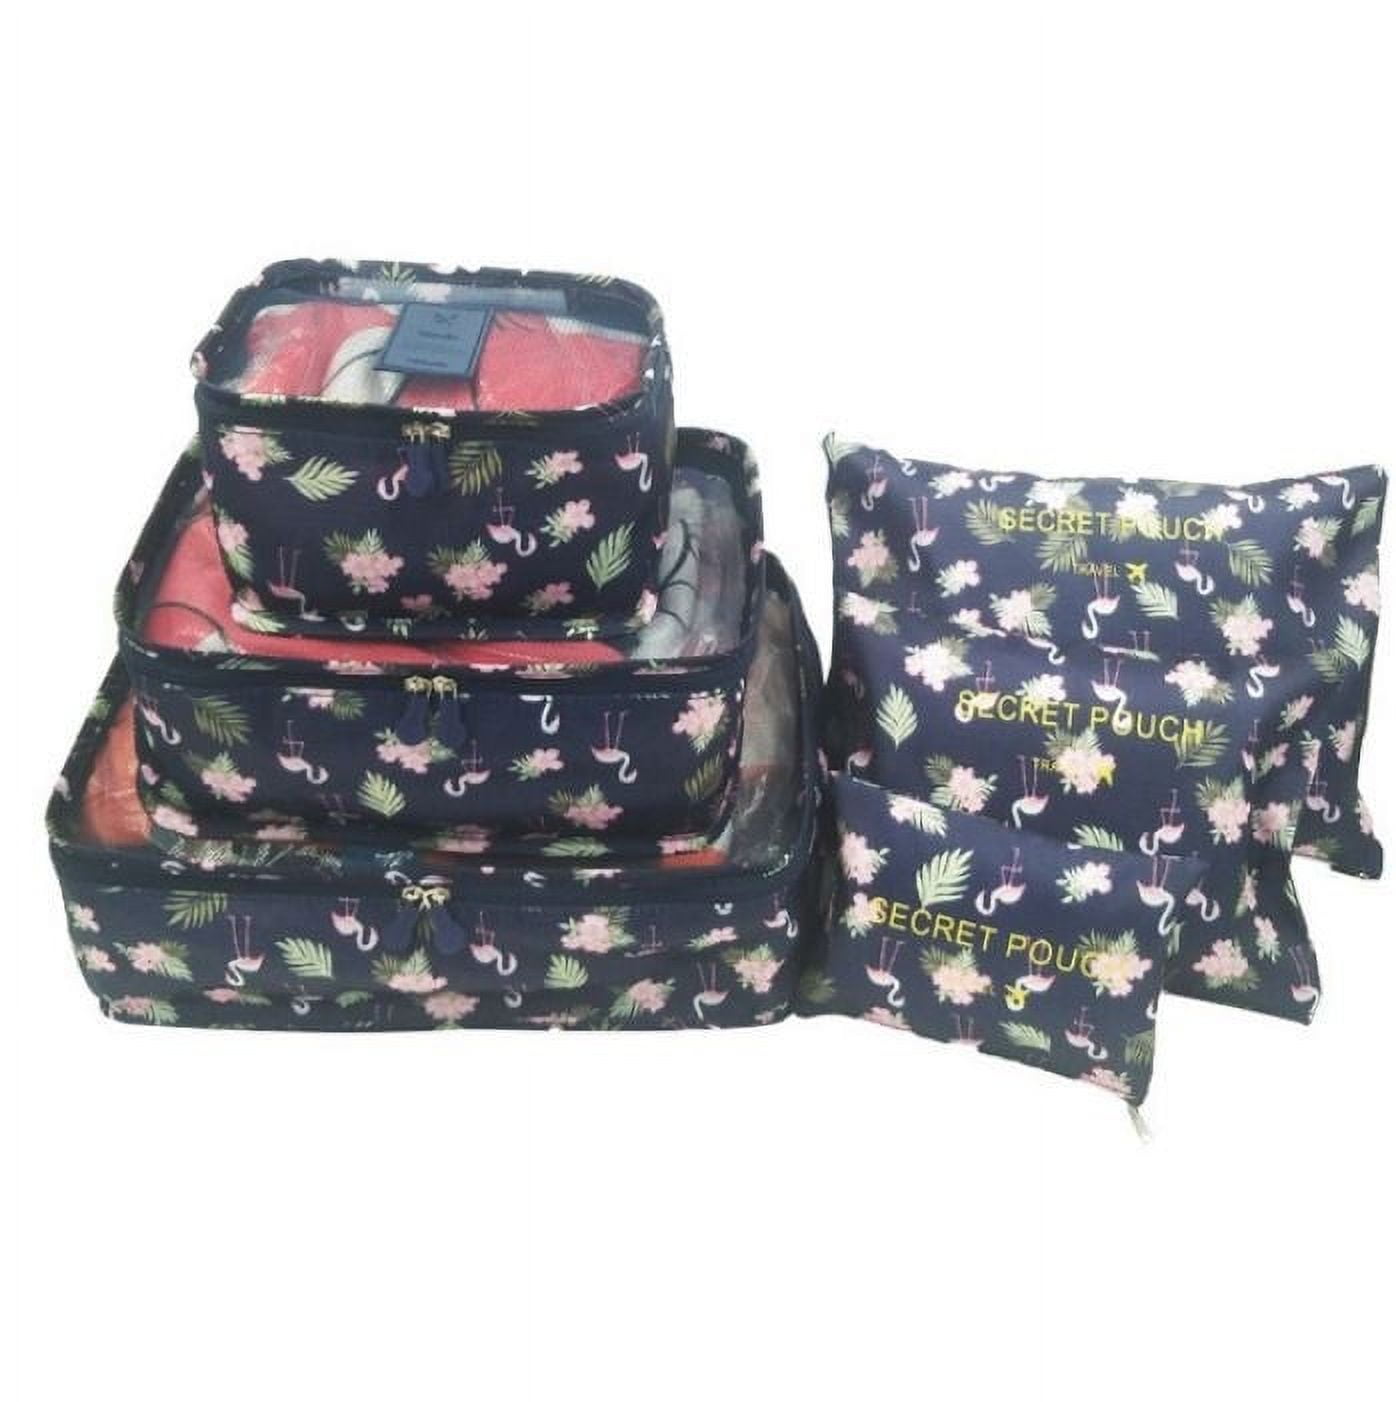  PACKOVE 6 bolsas organizadoras para viajes, bolsa de  almacenamiento impermeable, bolsa de almacenamiento de viaje, bolsa  organizadora de viaje, bolsa de almacenamiento impermeable, bolsa de viaje  organizadora de viaje : Ropa